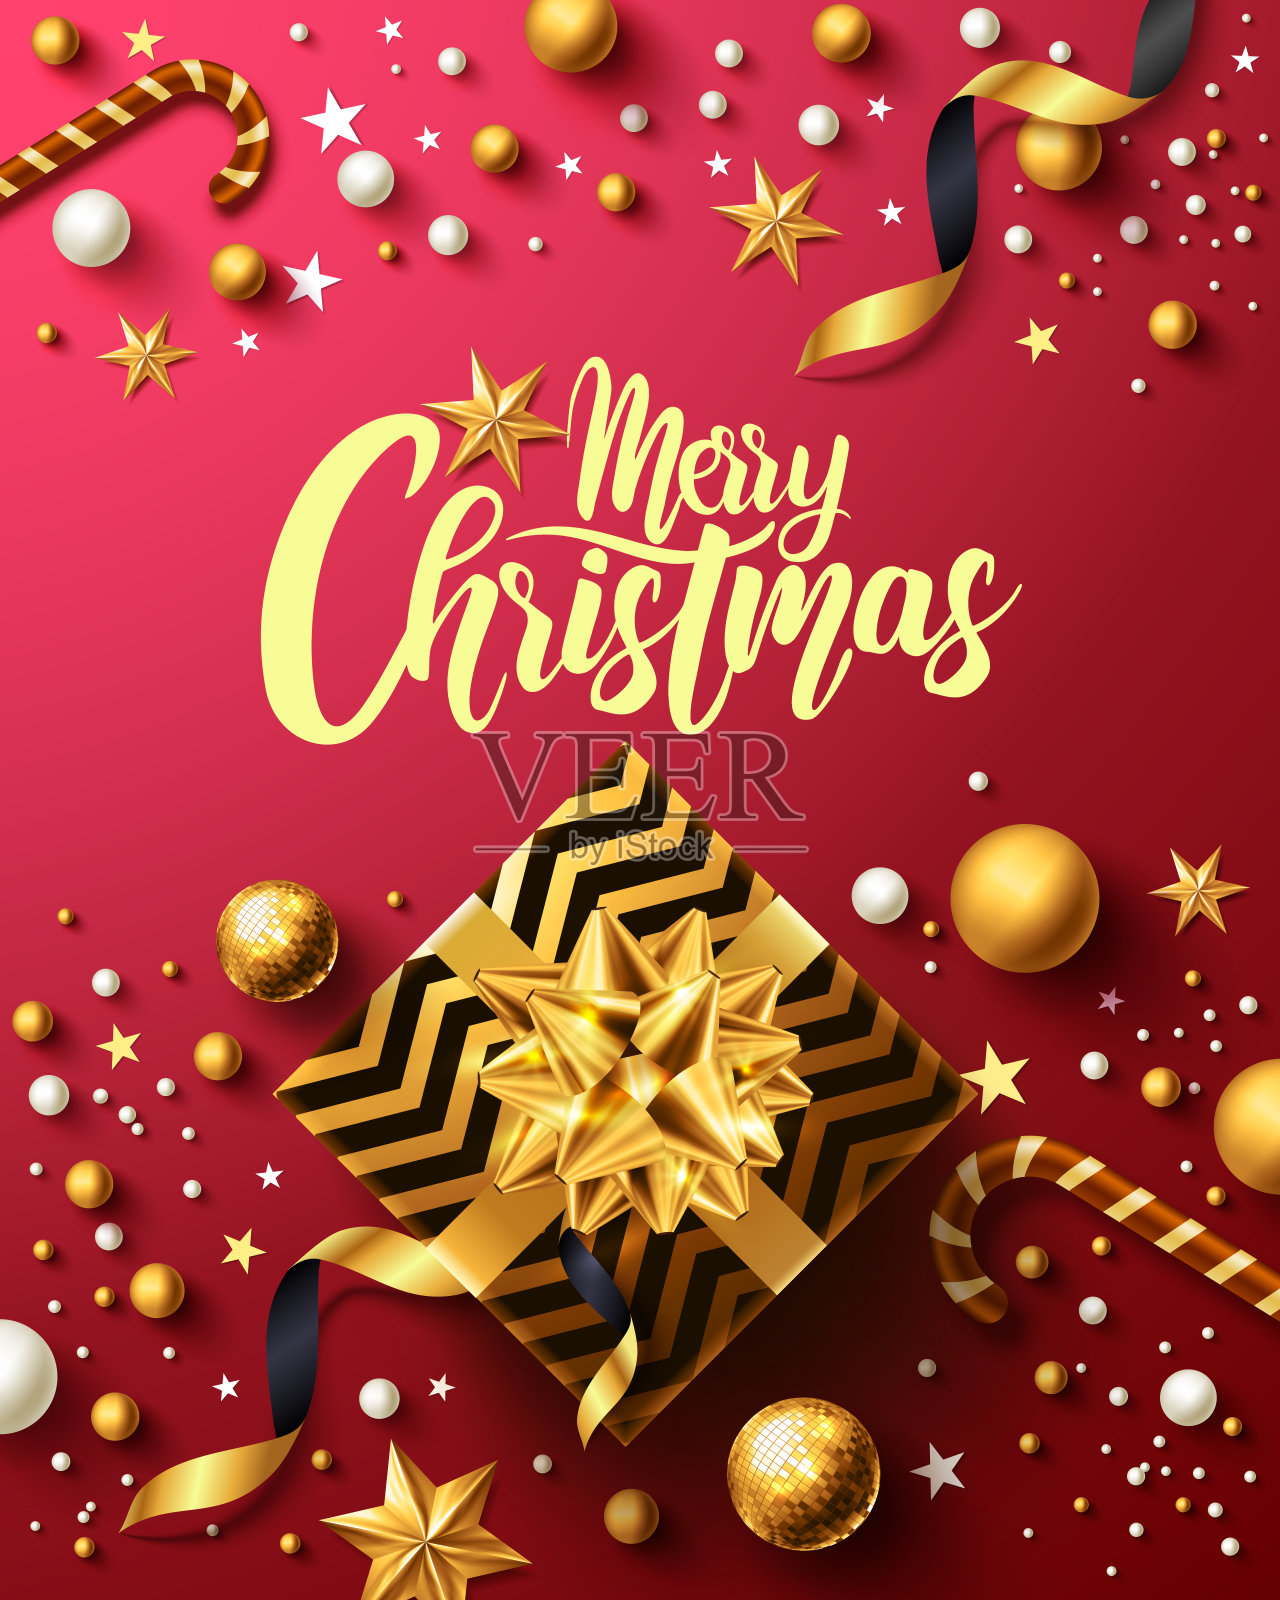 圣诞及新年红海报，配以金色礼盒、彩带及圣诞装饰元素，适合零售、购物或圣诞促销用。矢量图设计模板素材